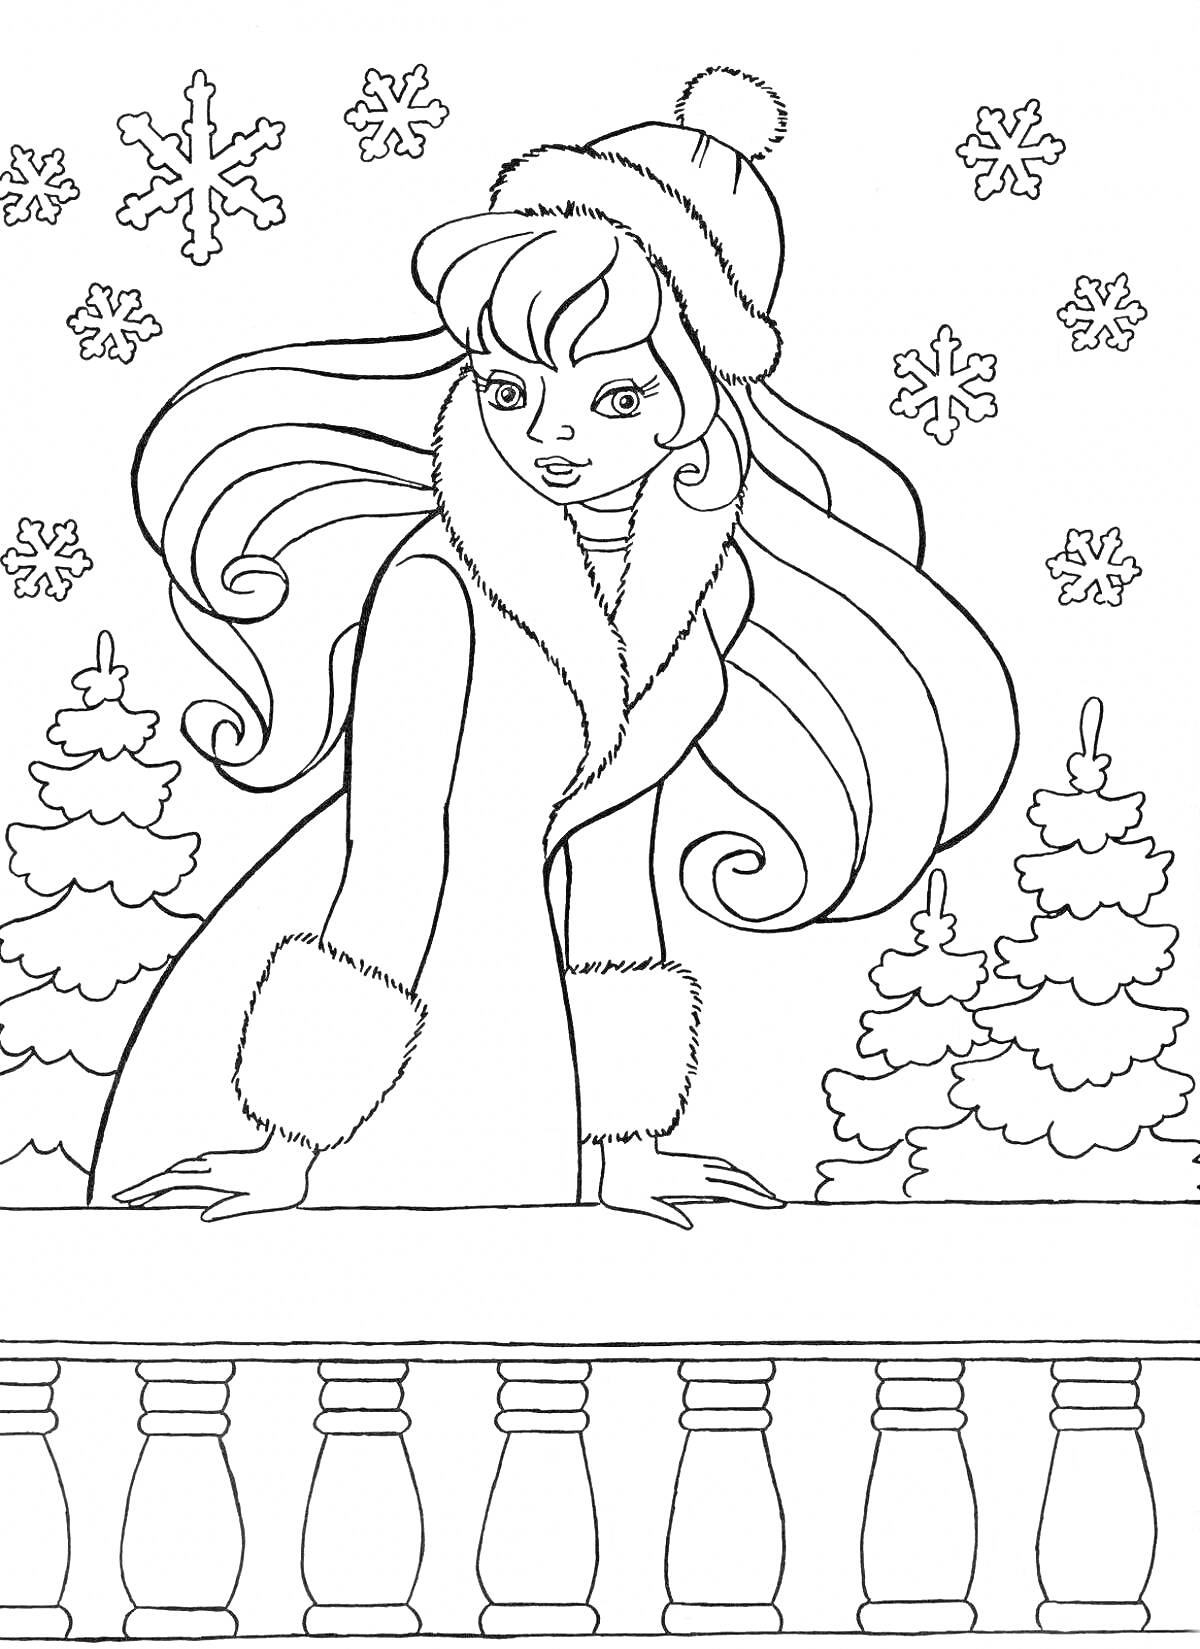 Раскраска Девочка у заснеженного балкона с елями и снежинками